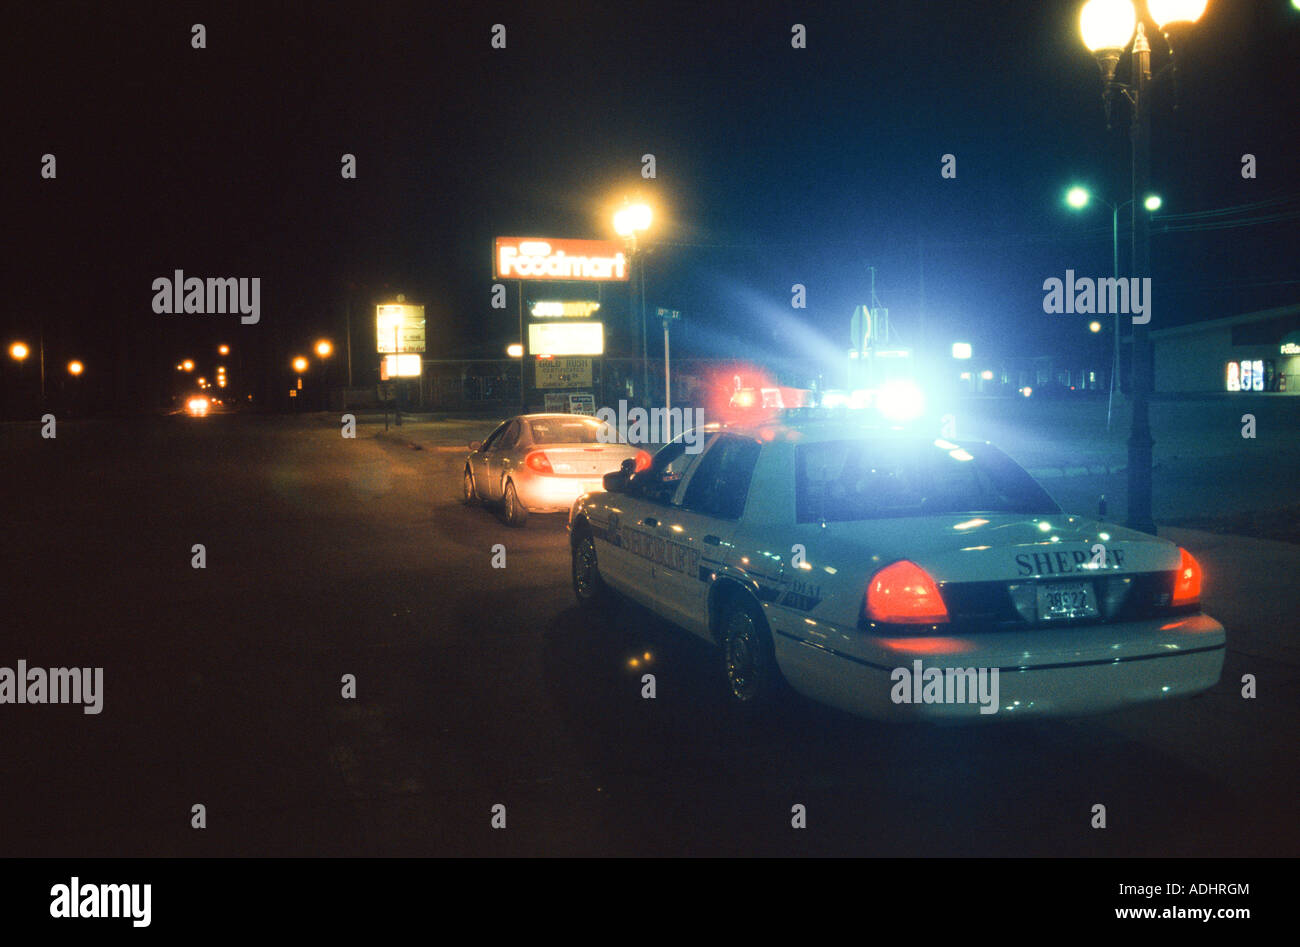 Le shérif adjoint décisions sobriété check point tard dans la nuit. Conducteur a été arrêté pour DUI. New York, USA. Banque D'Images